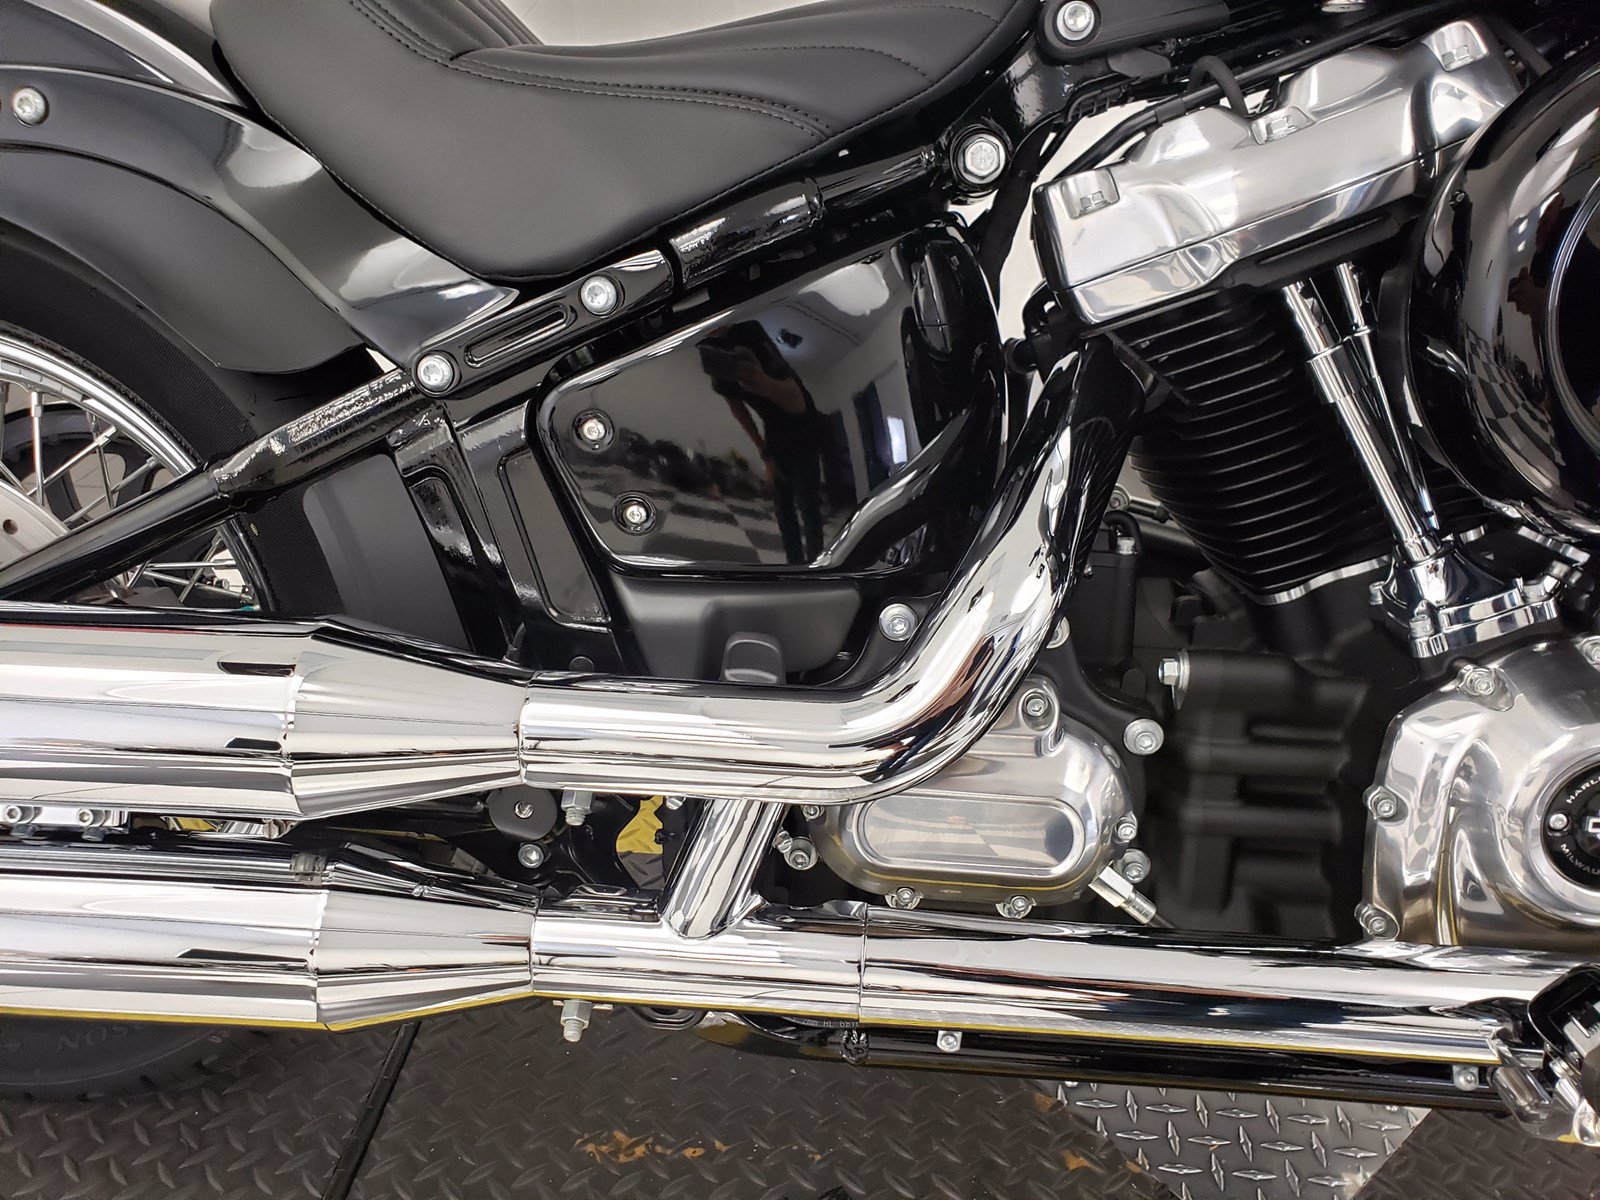 New 2020 Harley-Davidson Softail Standard FXST Softail in ...